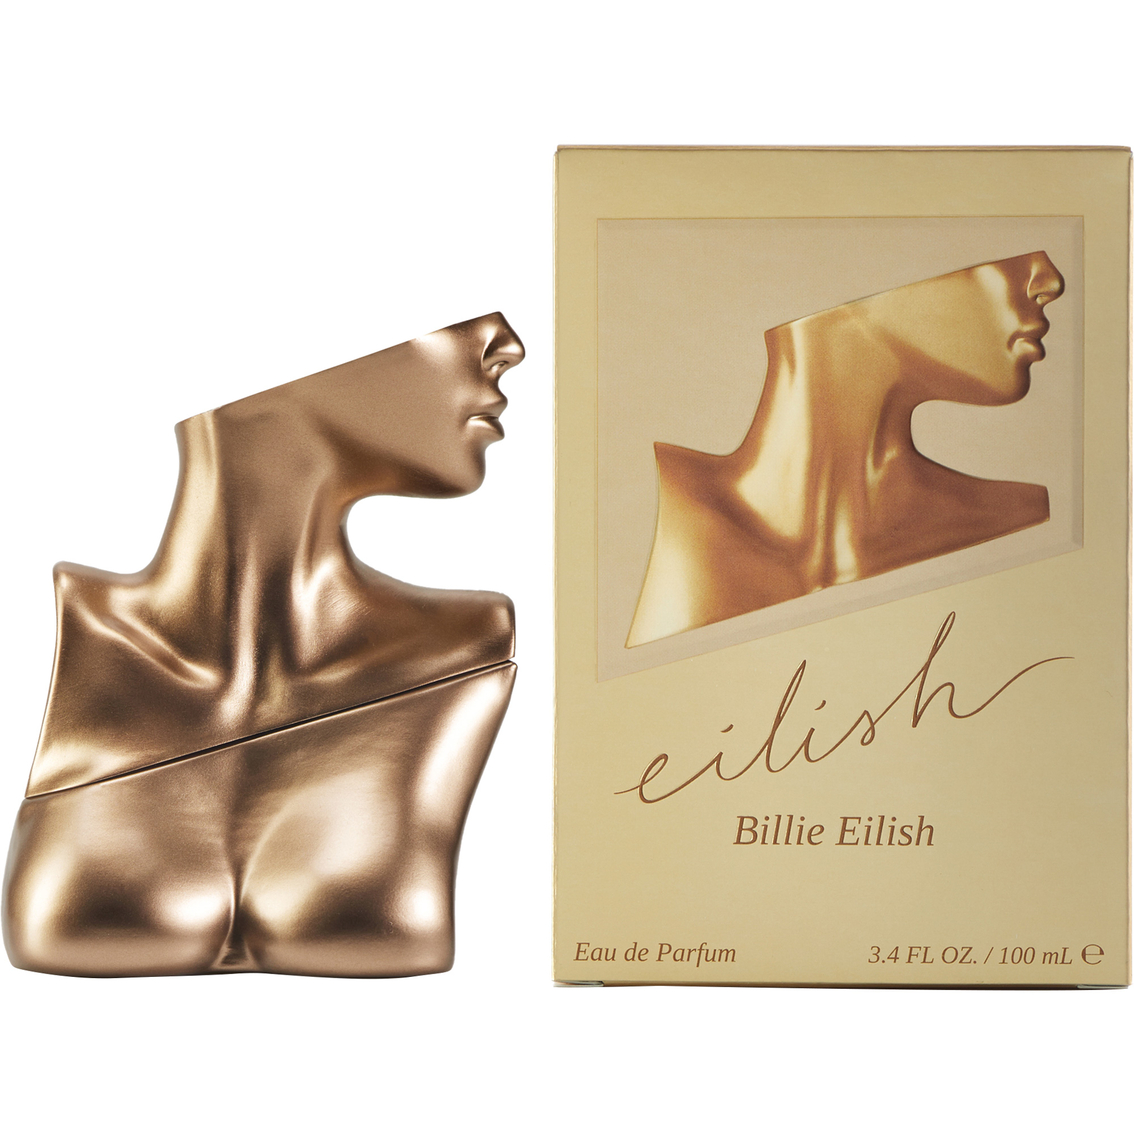 Billie Eilish Eilish Eau de Parfum - Image 2 of 2